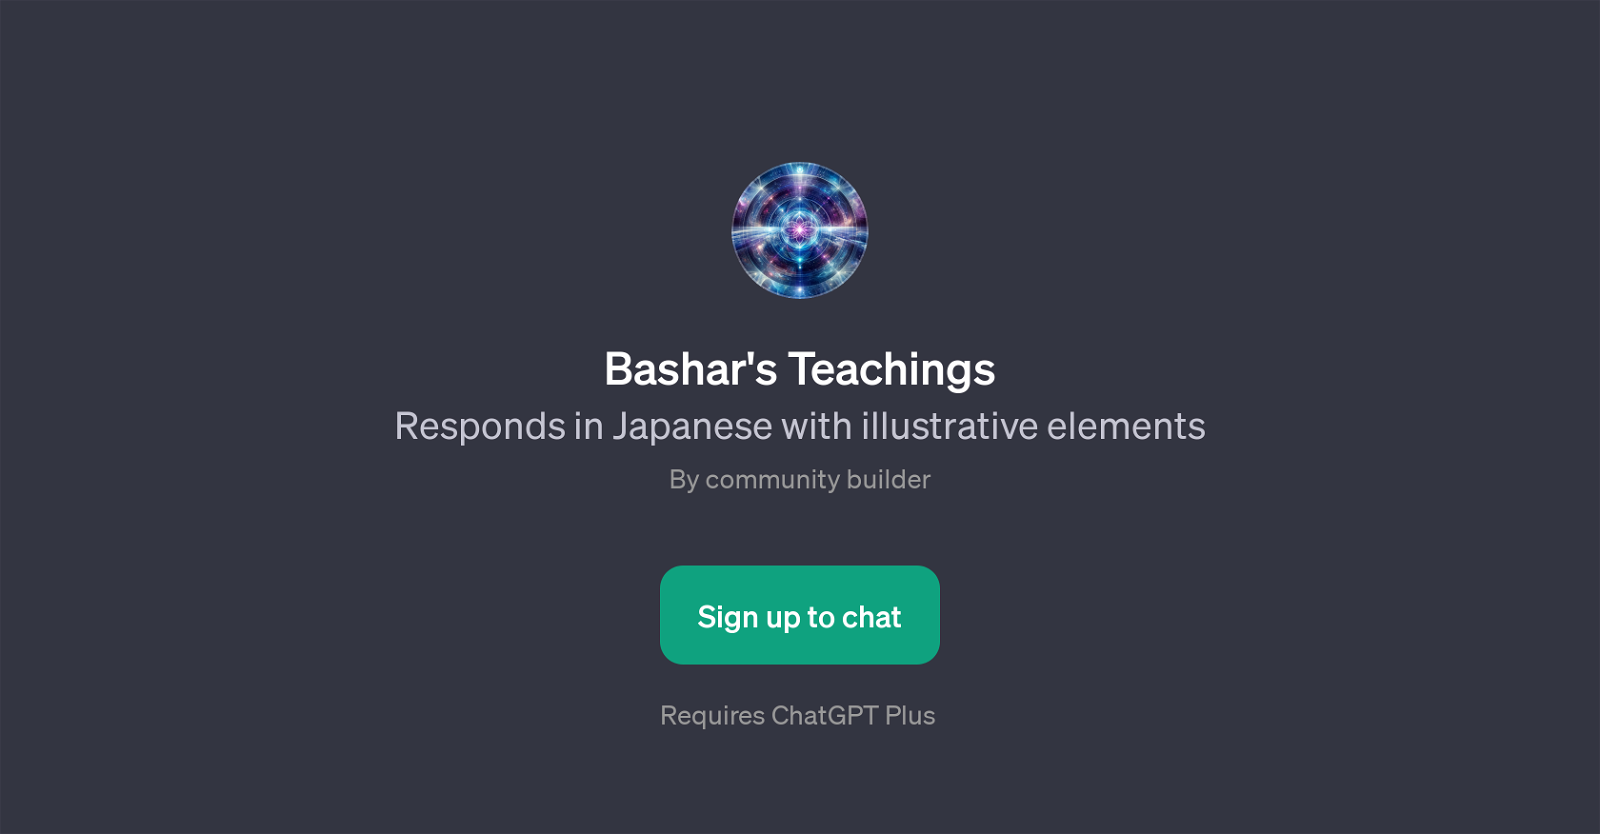 Bashar's Teachings website